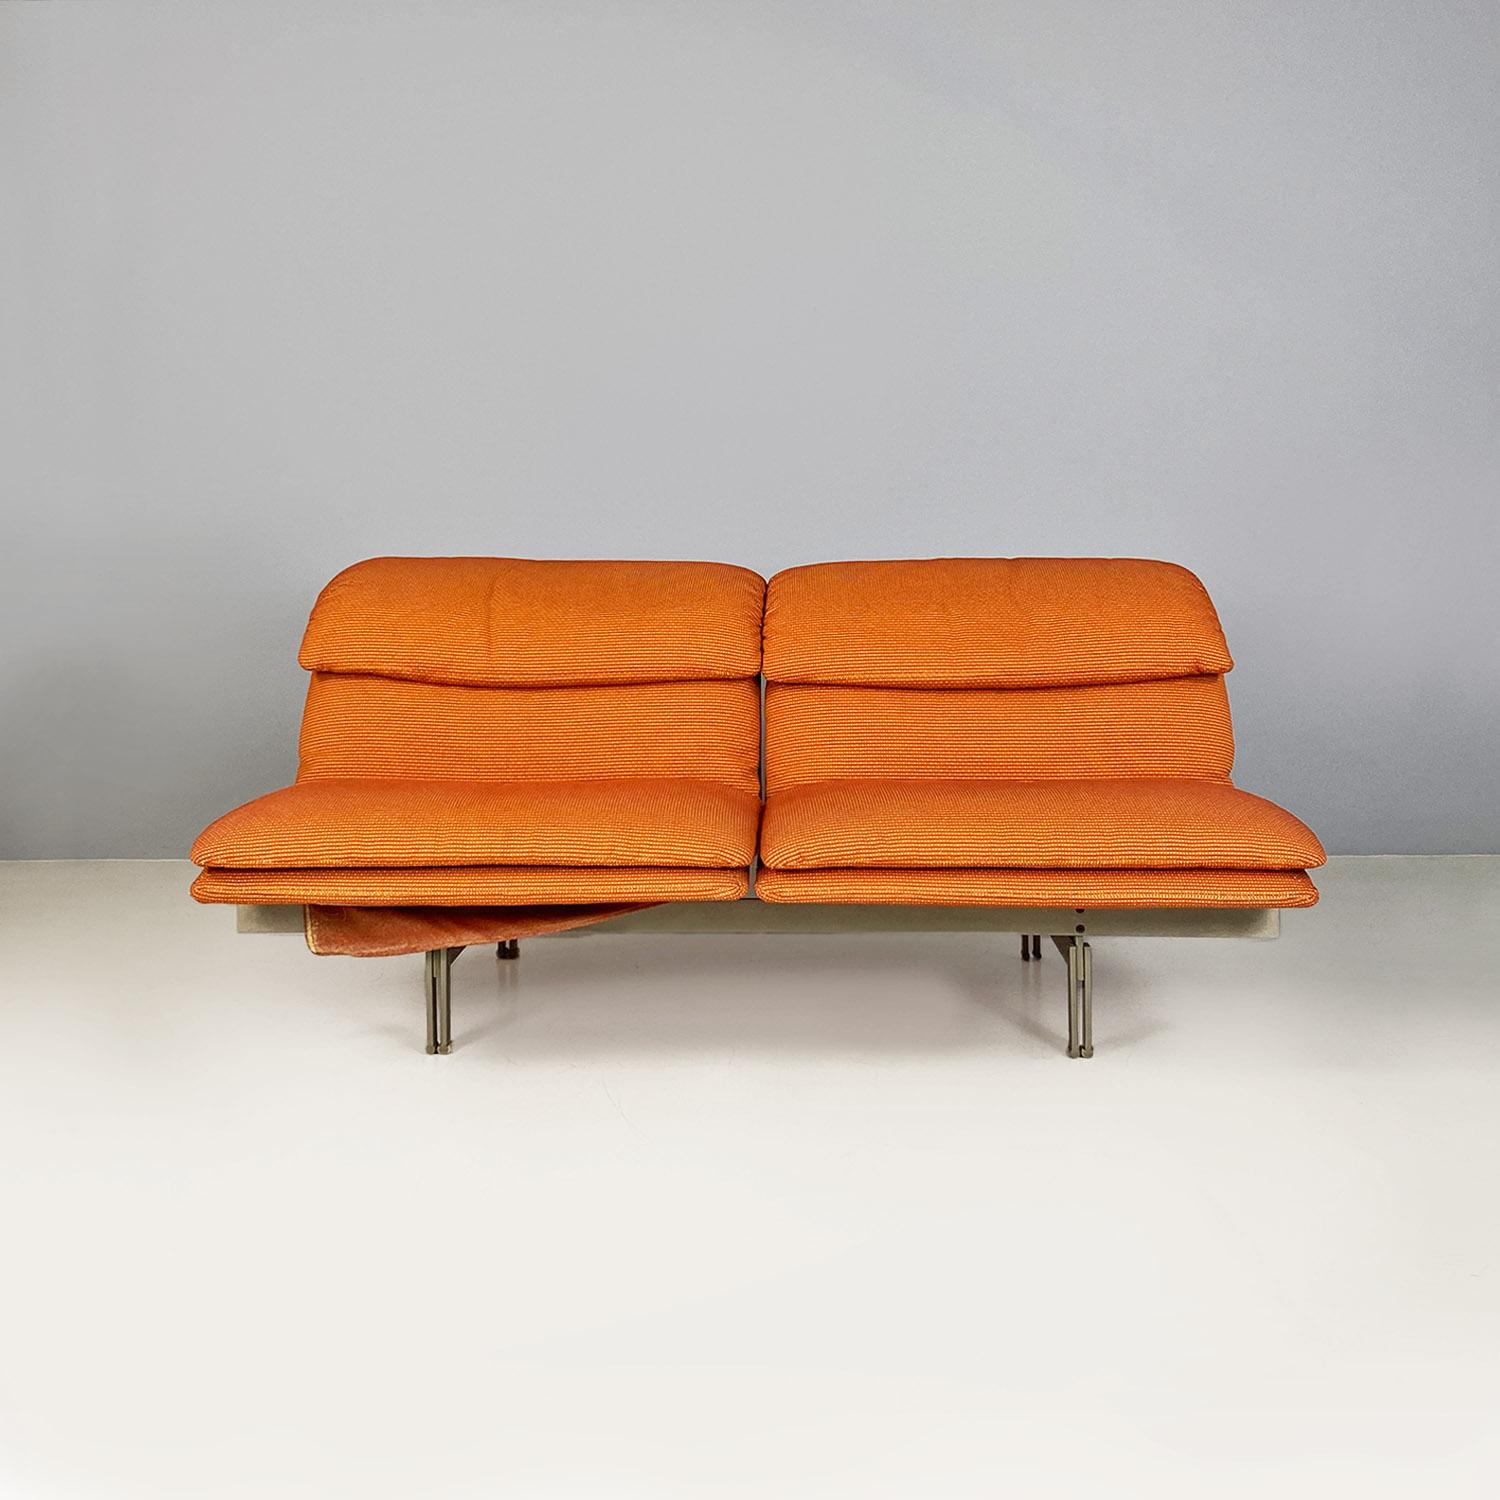 Modernes italienisches Sofa Wave aus Stahl und Stoff von Giovanni Offredi für Saporiti Italia, 1974.
Zweisitzer-Sofa Modell Wave, mit orangefarbenem Originalstoff und Gestell und Beinen aus satiniertem Stahl.
Hergestellt von Saporiti Italia, nach